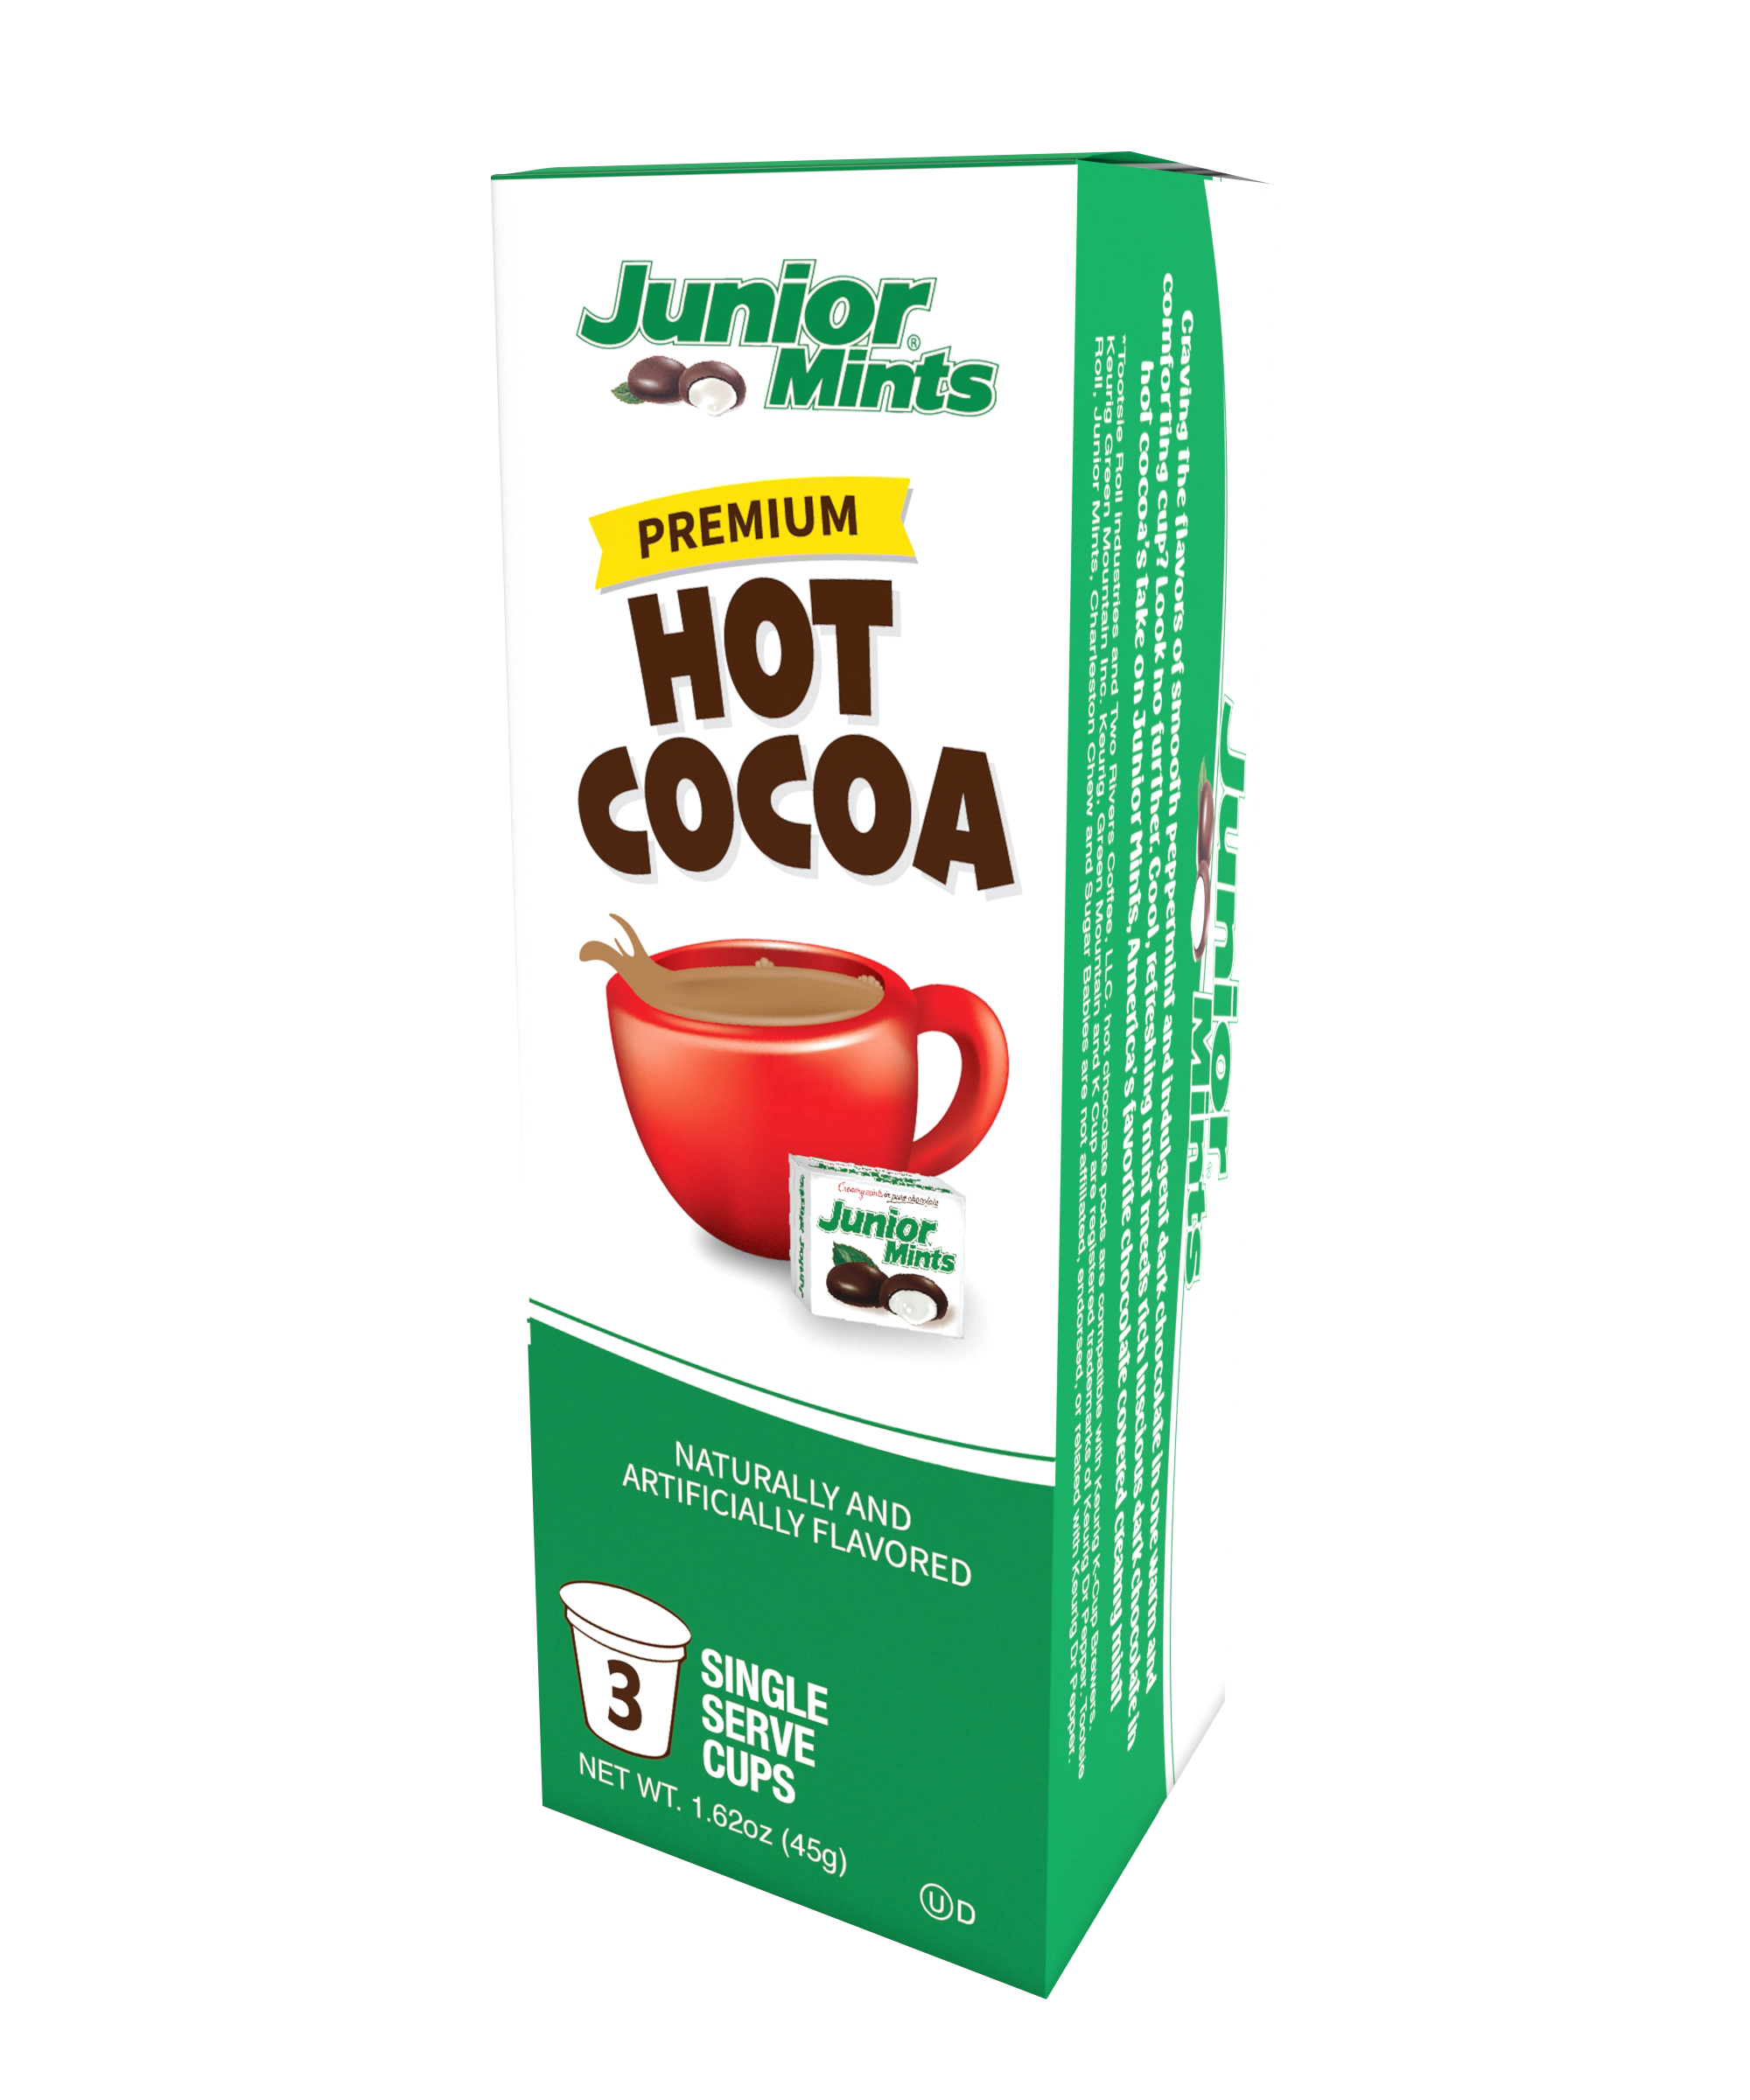 Junior Mints Hot Cocoa 3 Pk (case of 8)